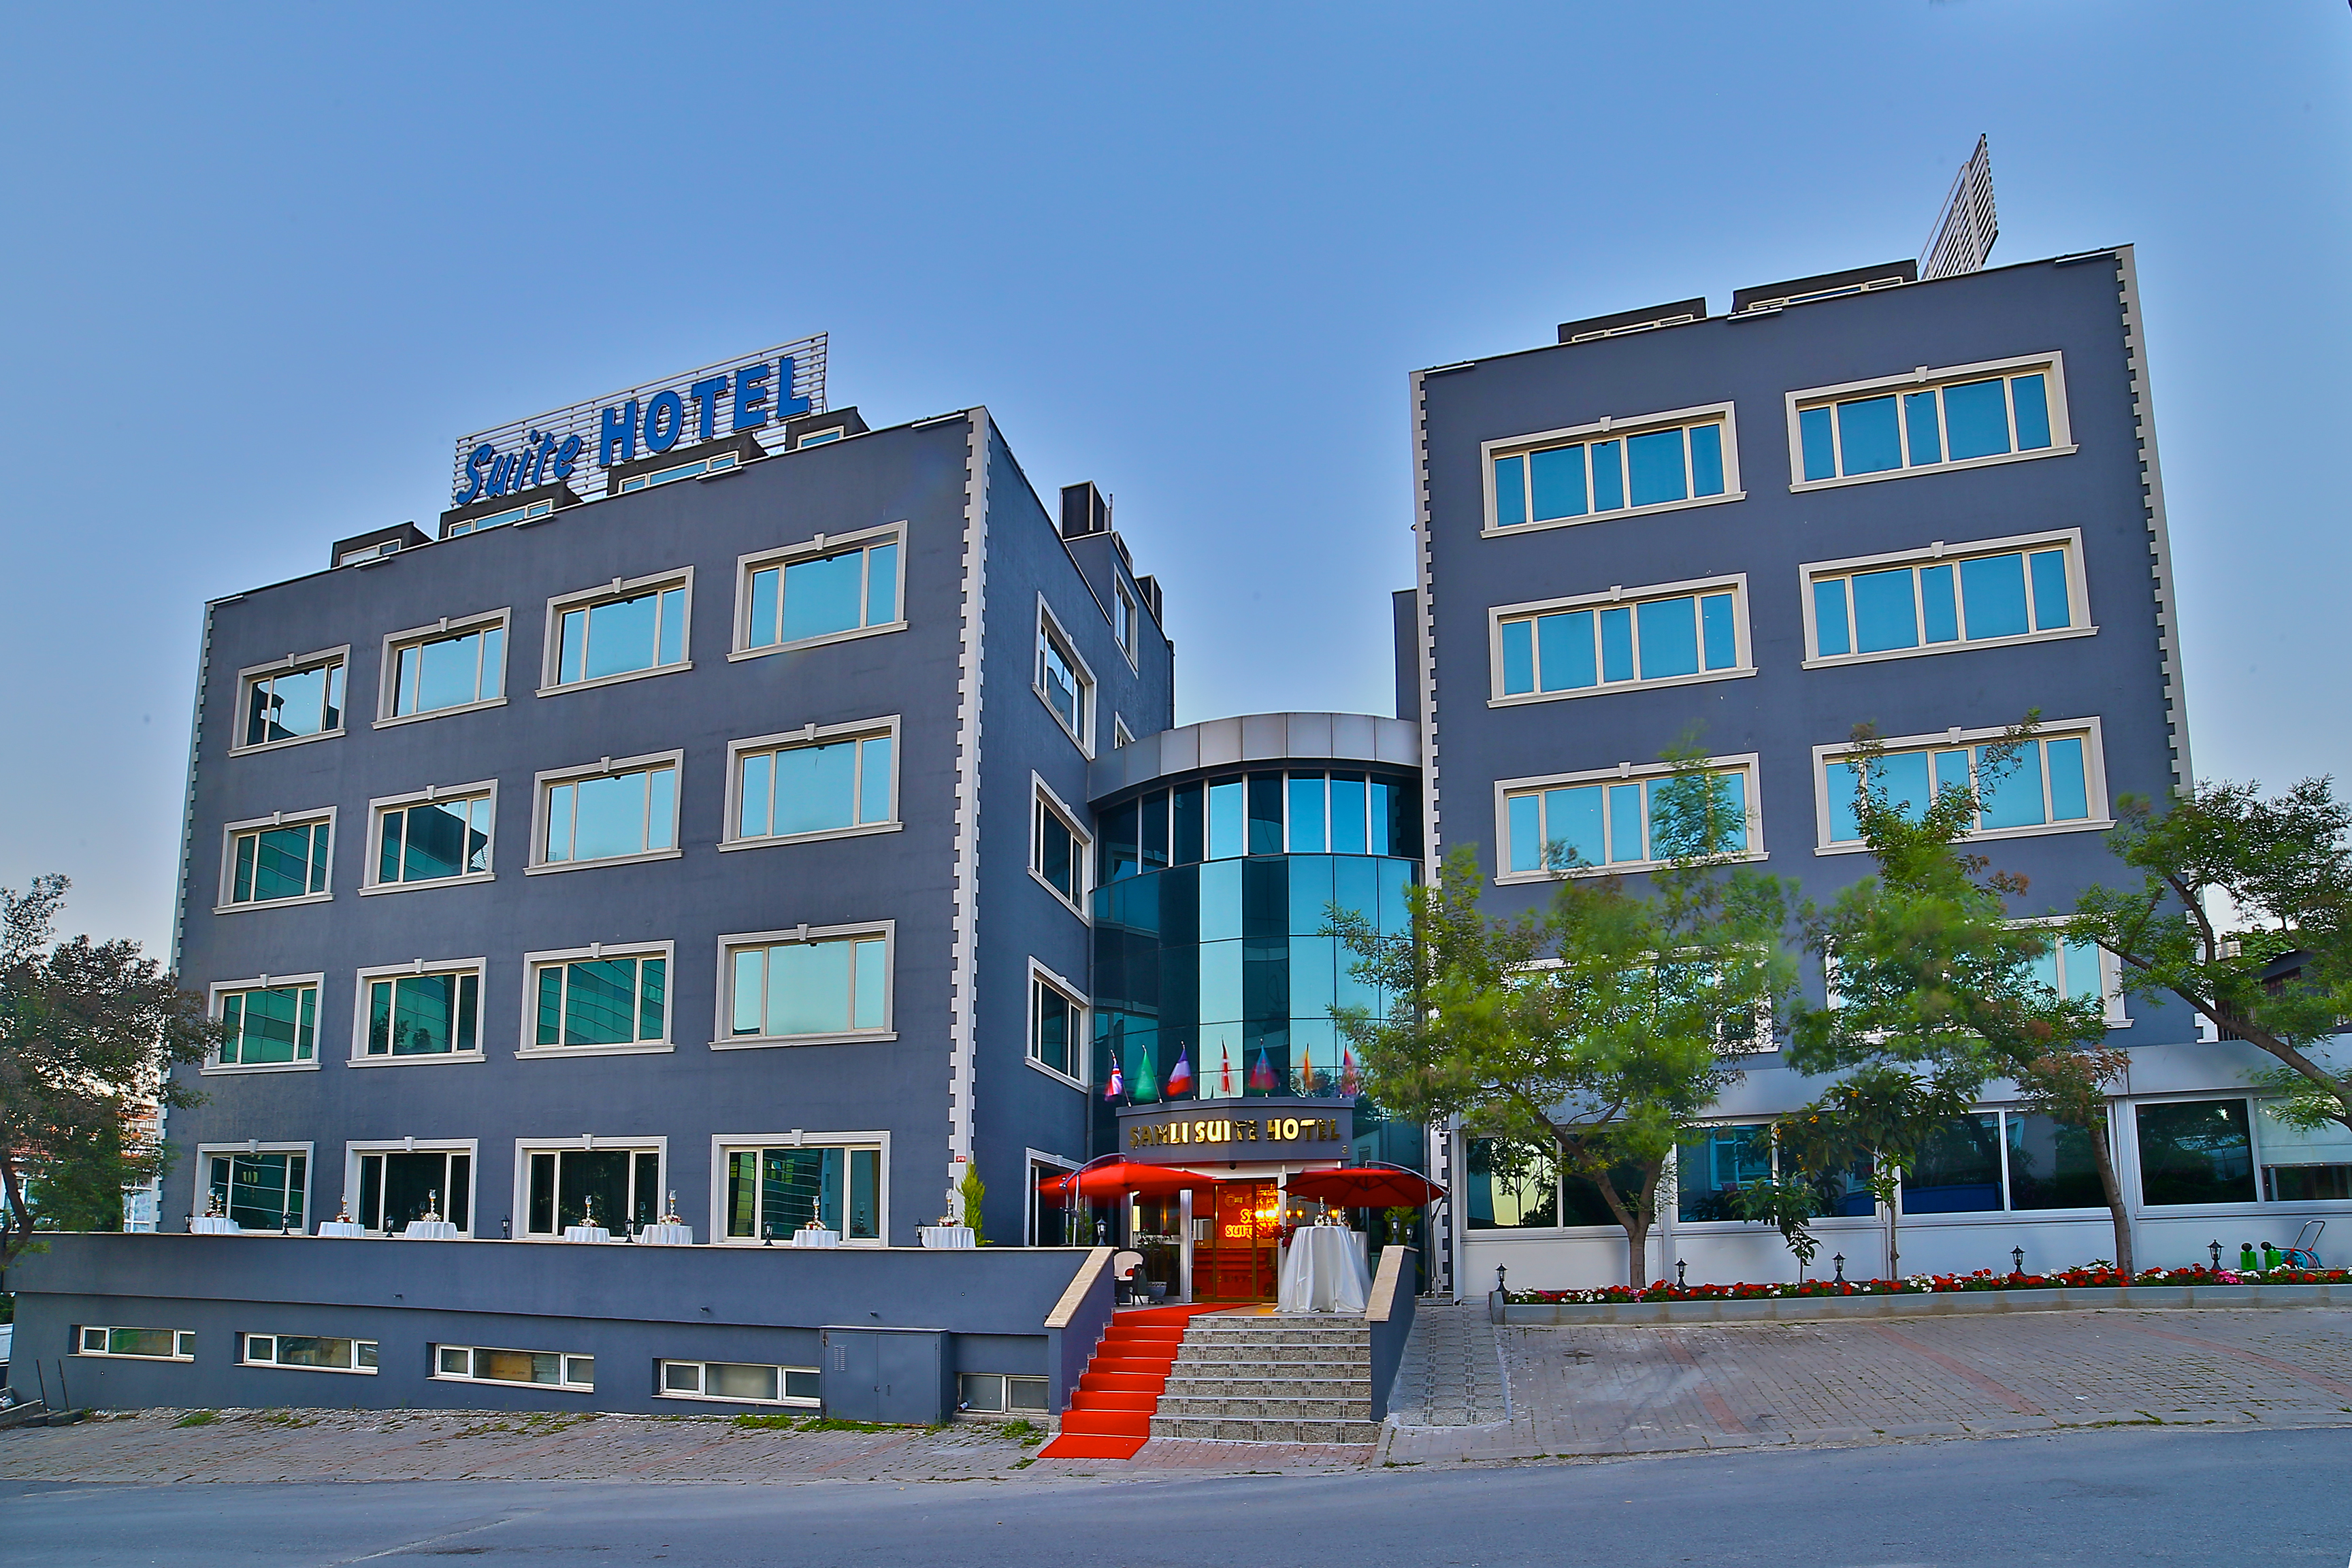 The Hera Premium Hotels image